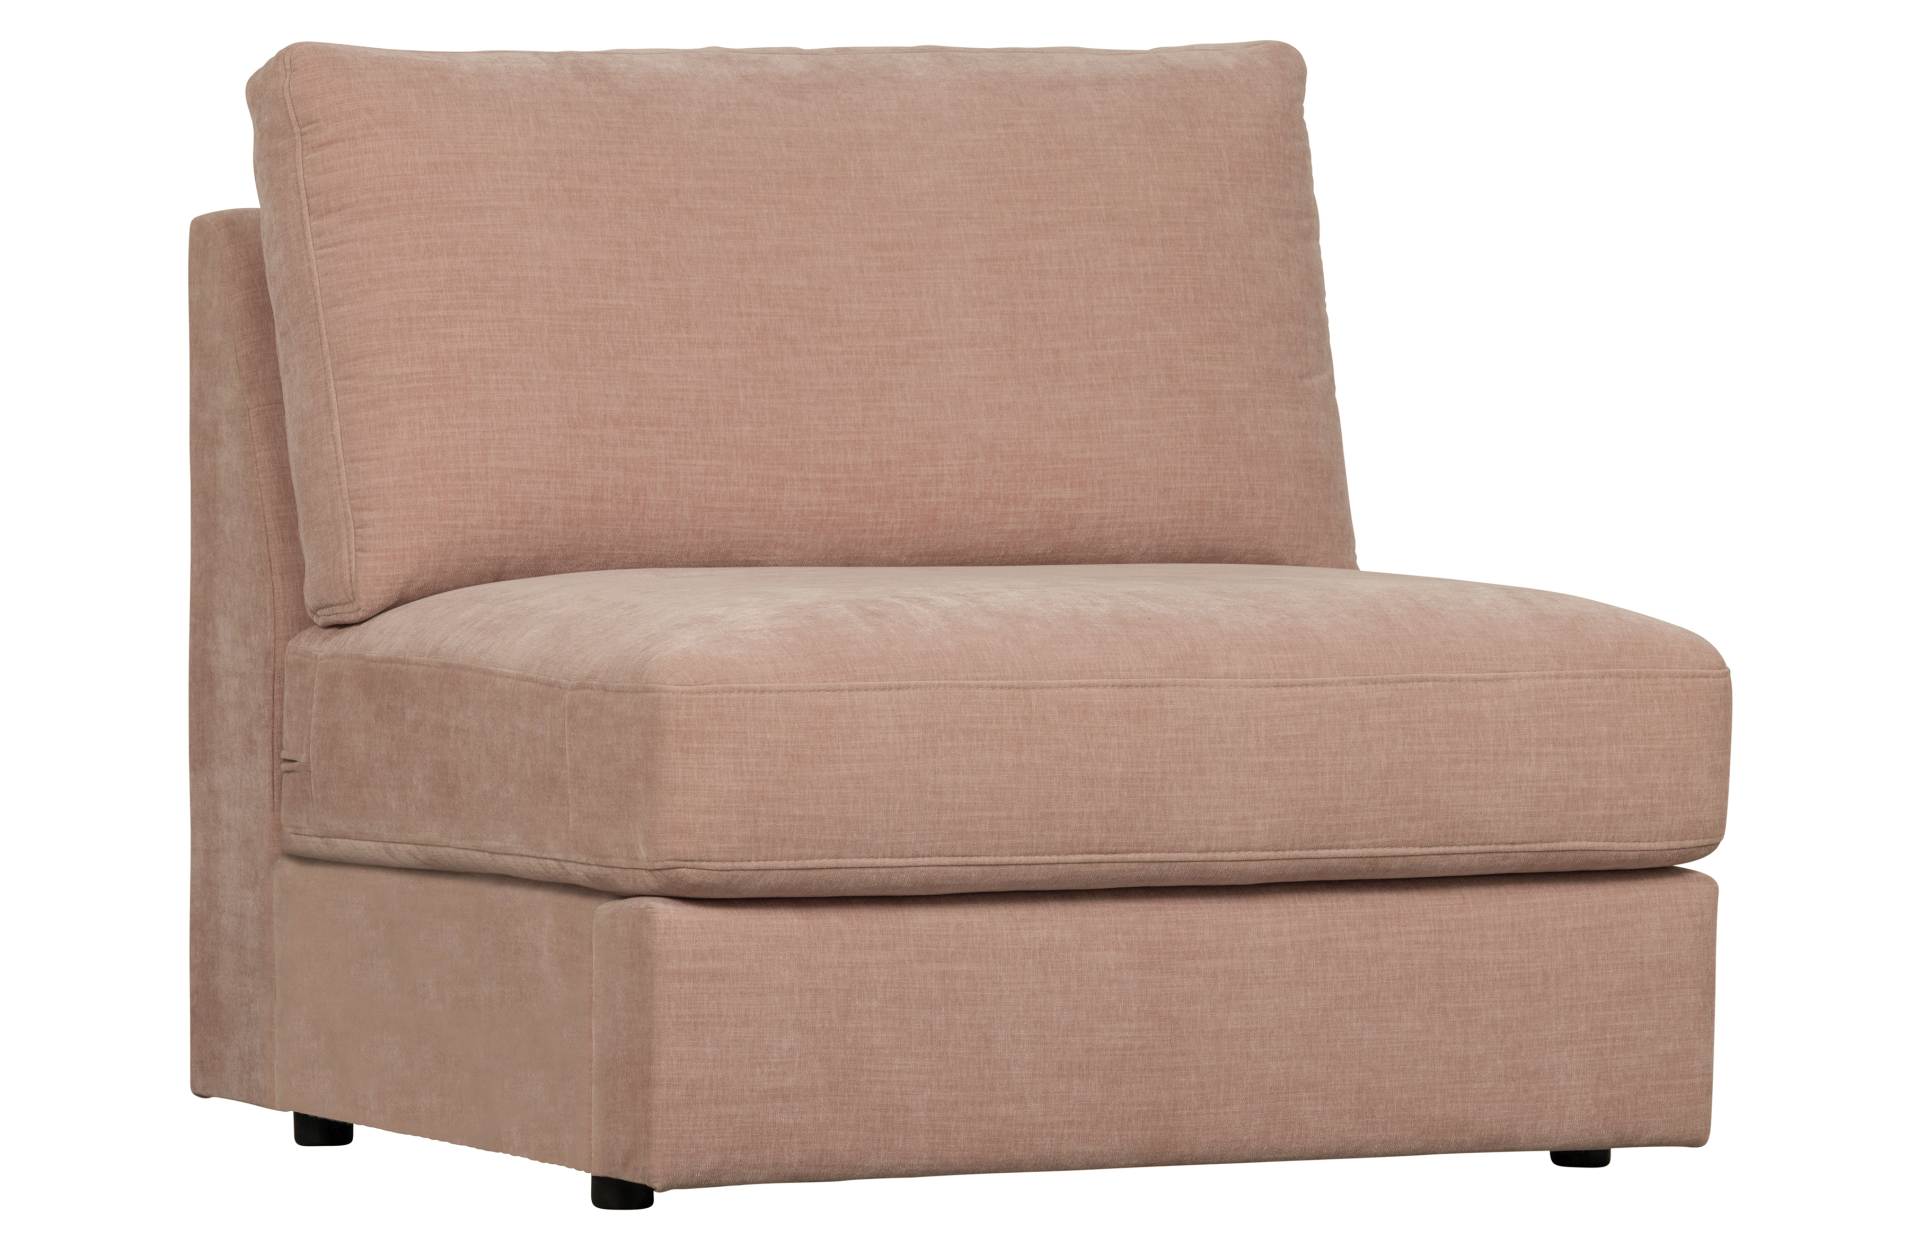 Das Modulsofa Family überzeugt mit seinem modernen Design. Das Seat Element wurde aus Gewebe-Stoff gefertigt, welcher einen einen rosa Farbton besitzen. Das Gestell ist aus Metall und hat eine schwarze Farbe. Das Element hat eine Sitzhöhe von 44 cm.